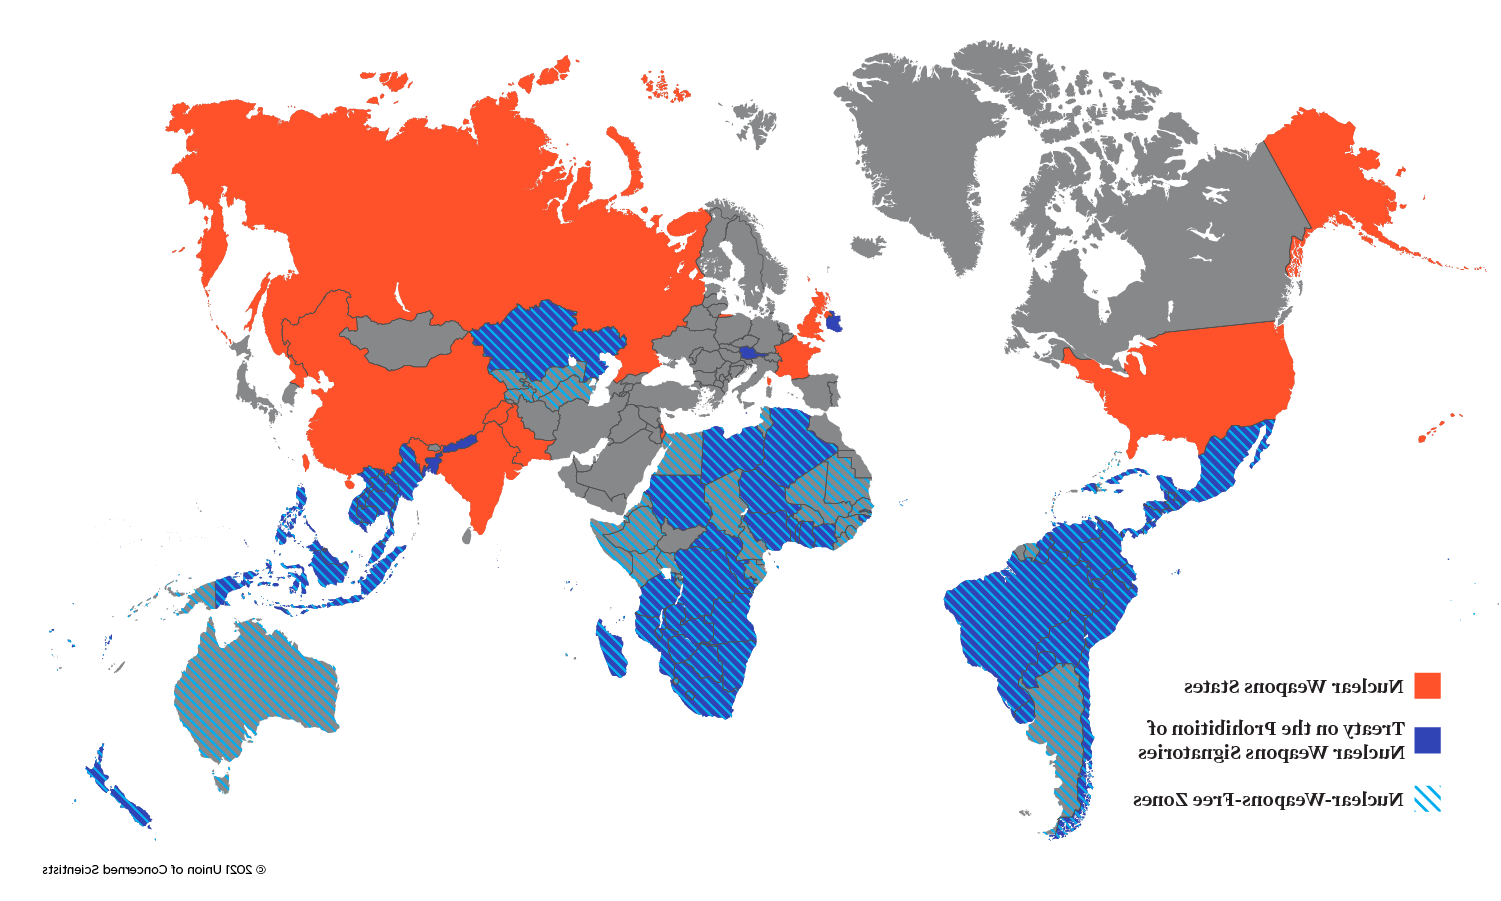 世界地图显示有核武器的国家, TPNW签署国, 以及无核武器区的国家